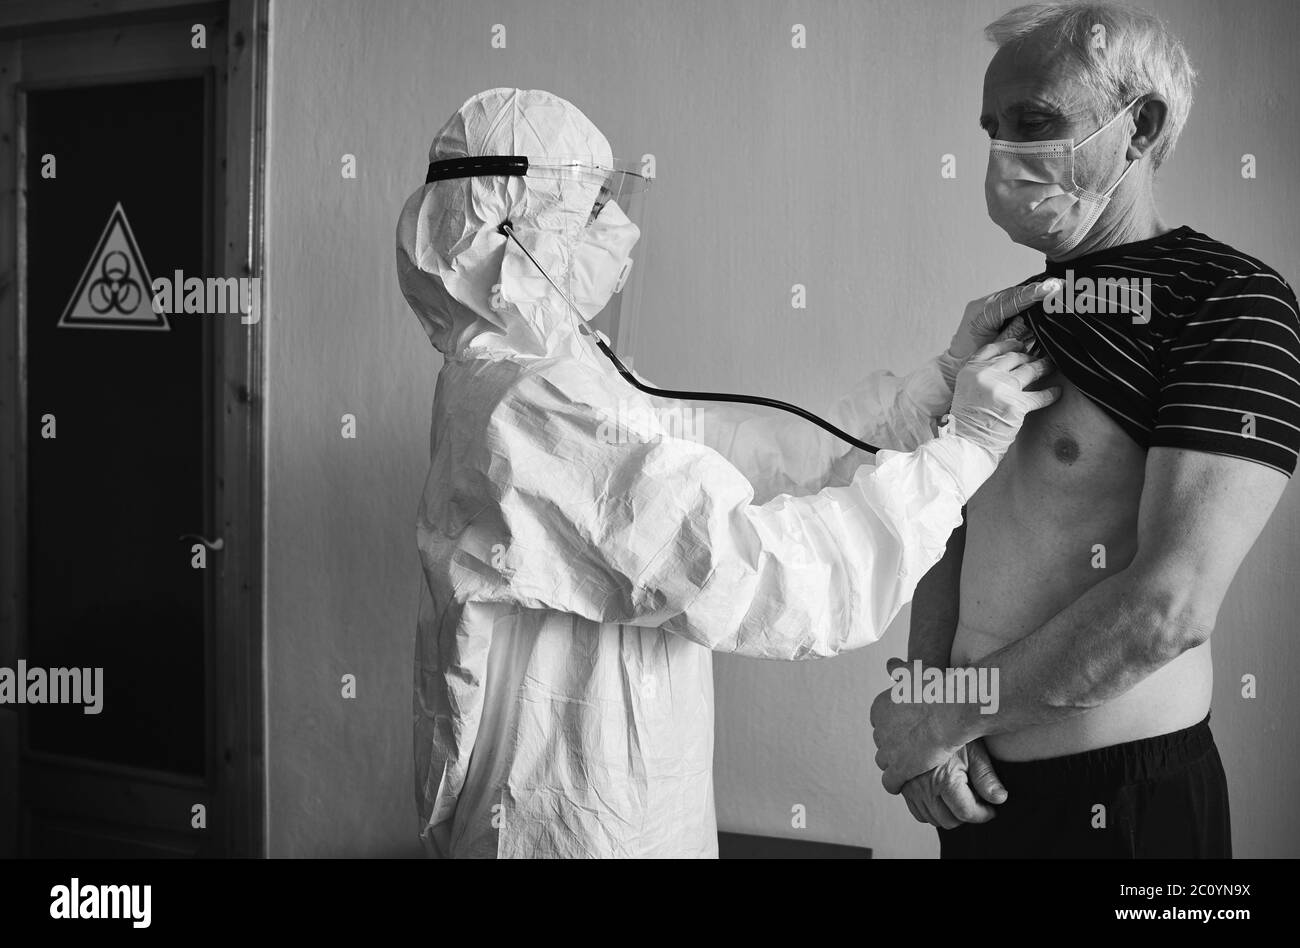 Médecin en costume de protection personnelle examinant le patient âgé de sexe masculin à la maison à l'aide d'un phonendoscope, en vérifiant la poitrine, debout au mur, panneau de danger biologique sur la porte, noir et blanc, concept COVID-19 Banque D'Images